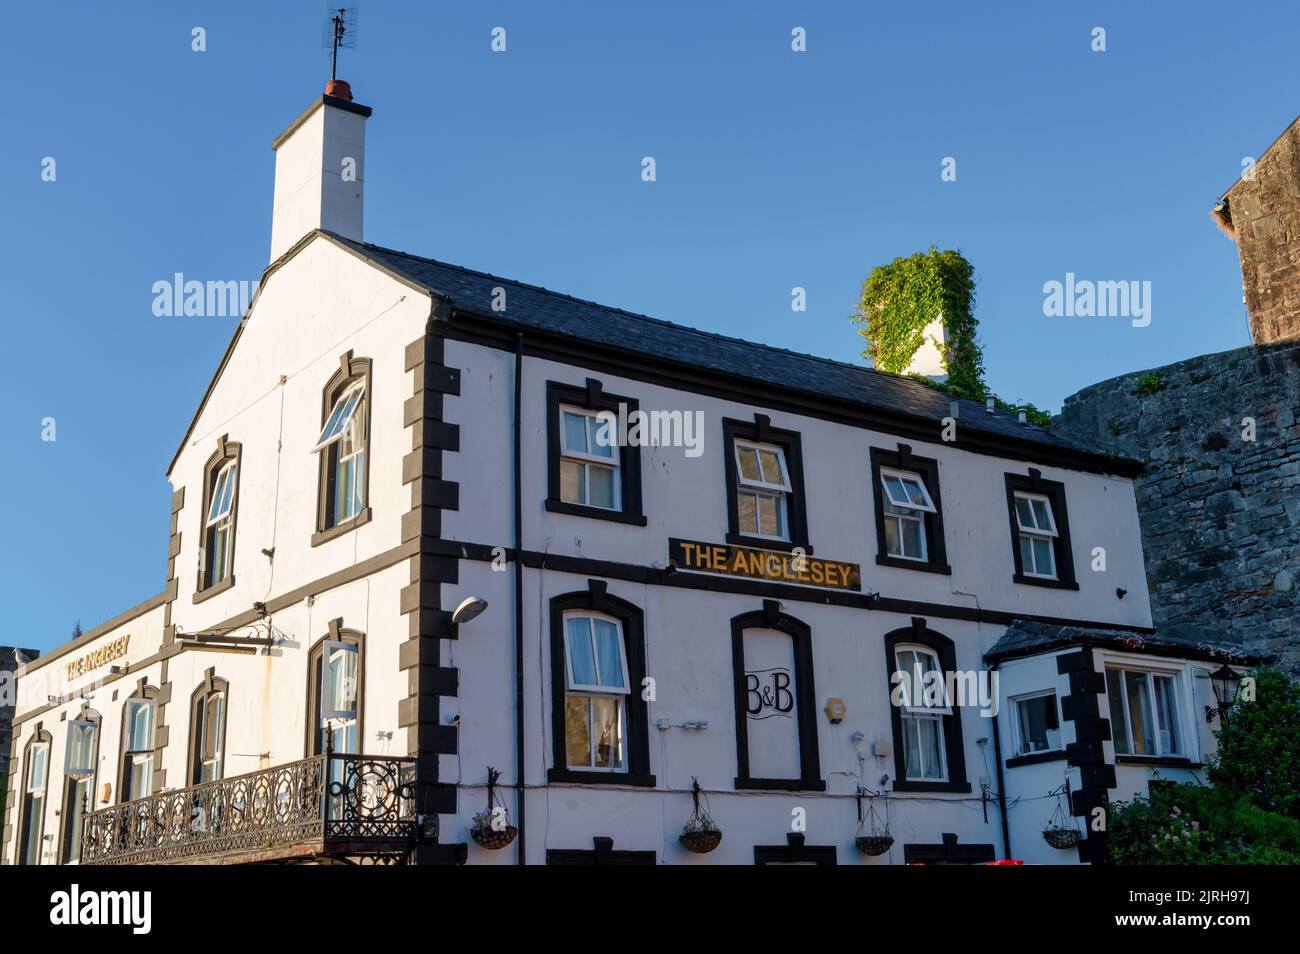 Caernarfon, Großbritannien, 10. Juli 2022: Das Anglesey Pub befindet sich neben der mittelalterlichen Mauer von Caernafon in Wales. Stockfoto